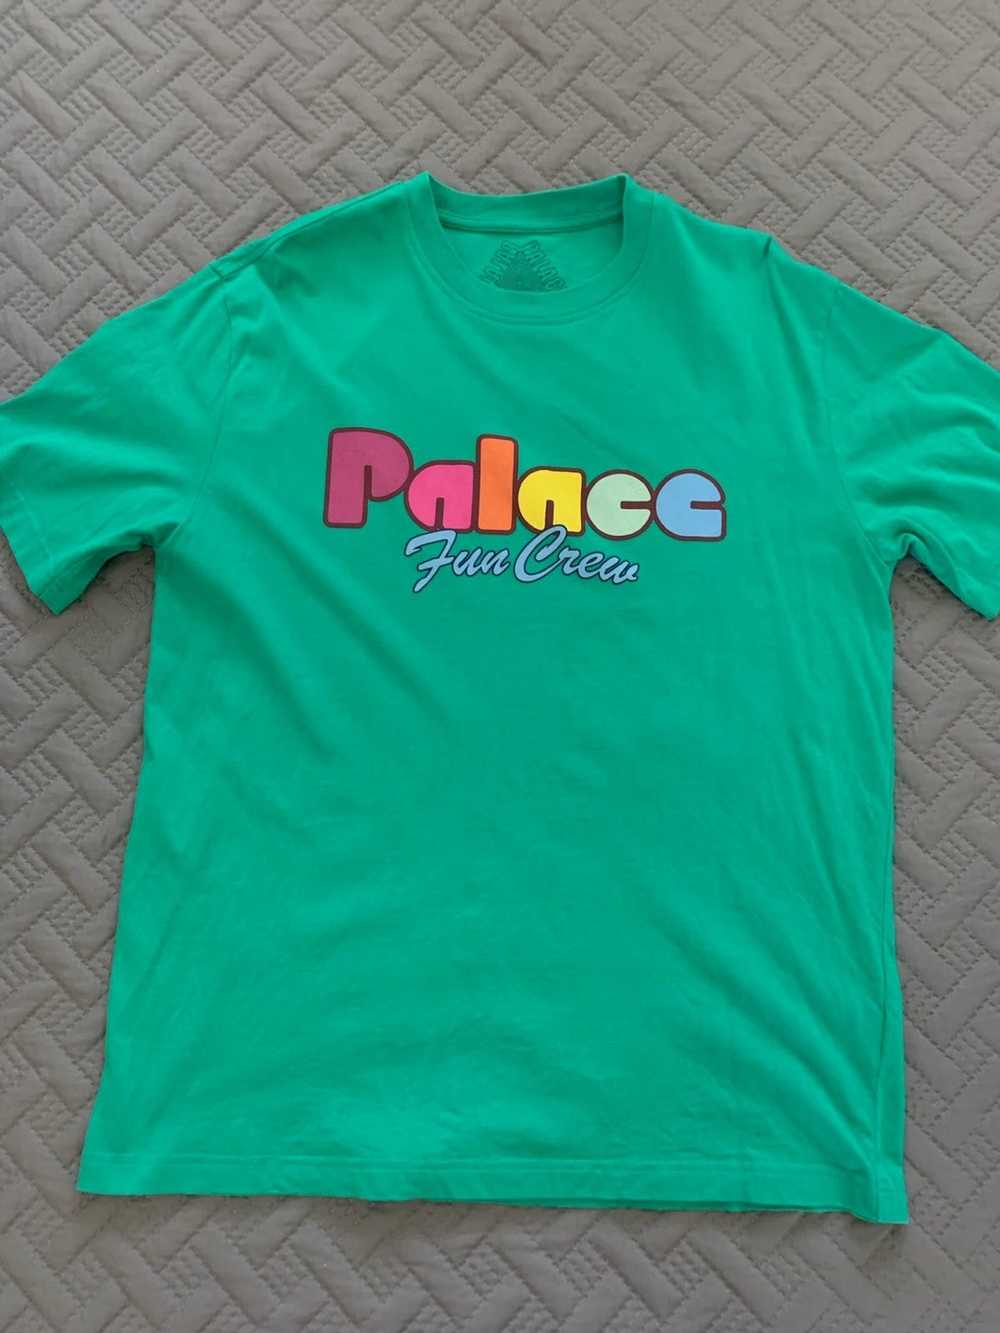 Palace Palace “Fun Crew” T Shirt - image 1